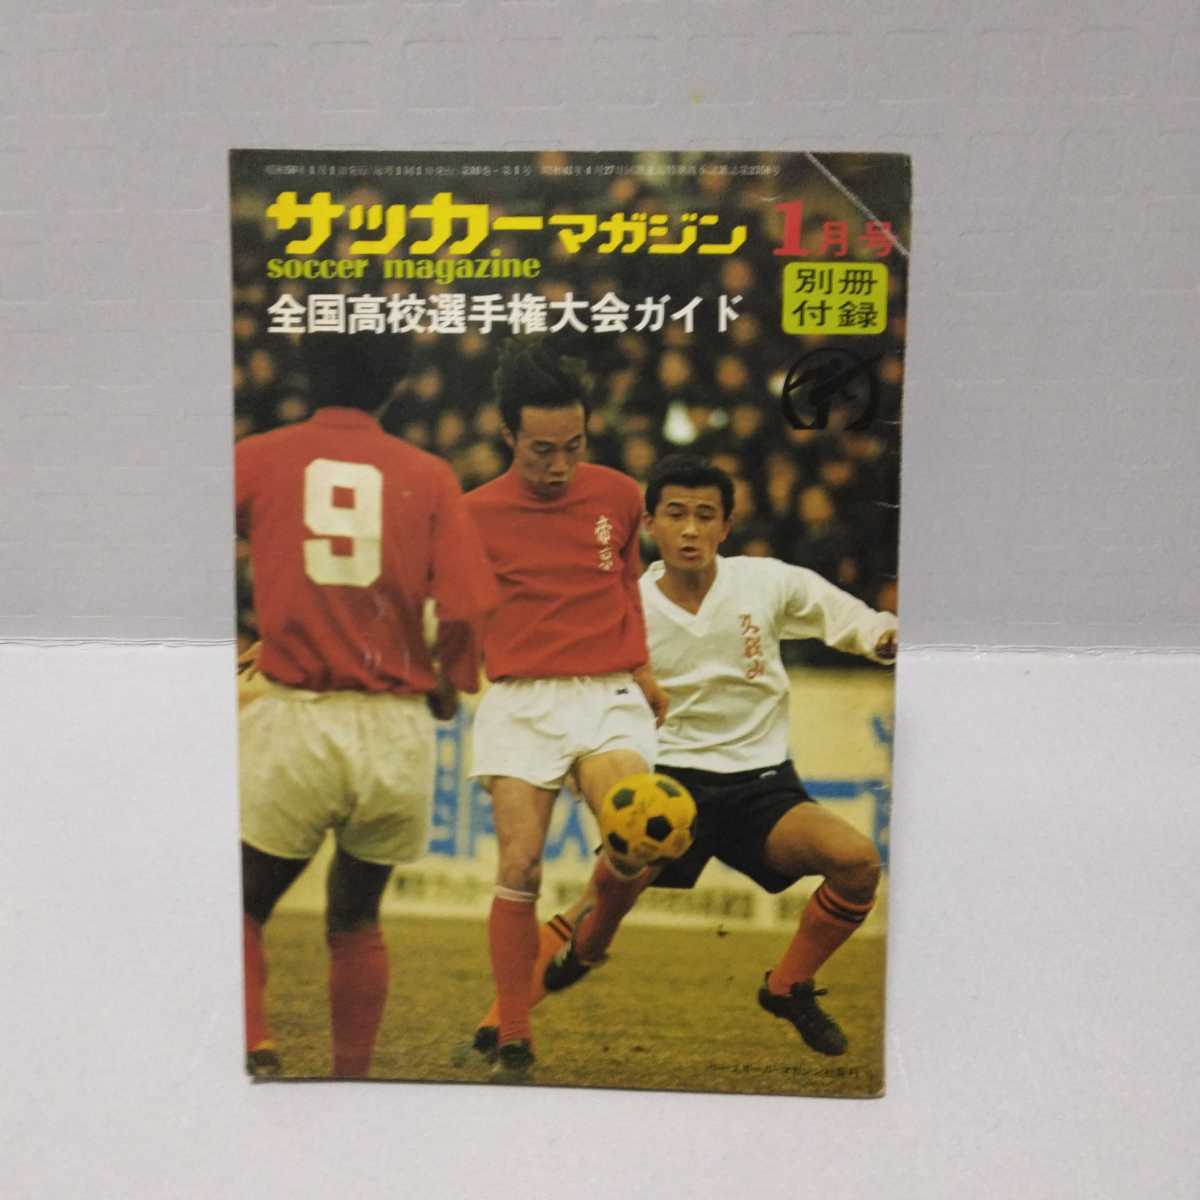  футбол журнал отдельный выпуск дополнение вся страна средняя школа игрок право собрание гид Showa 50 год 1 месяц номер 